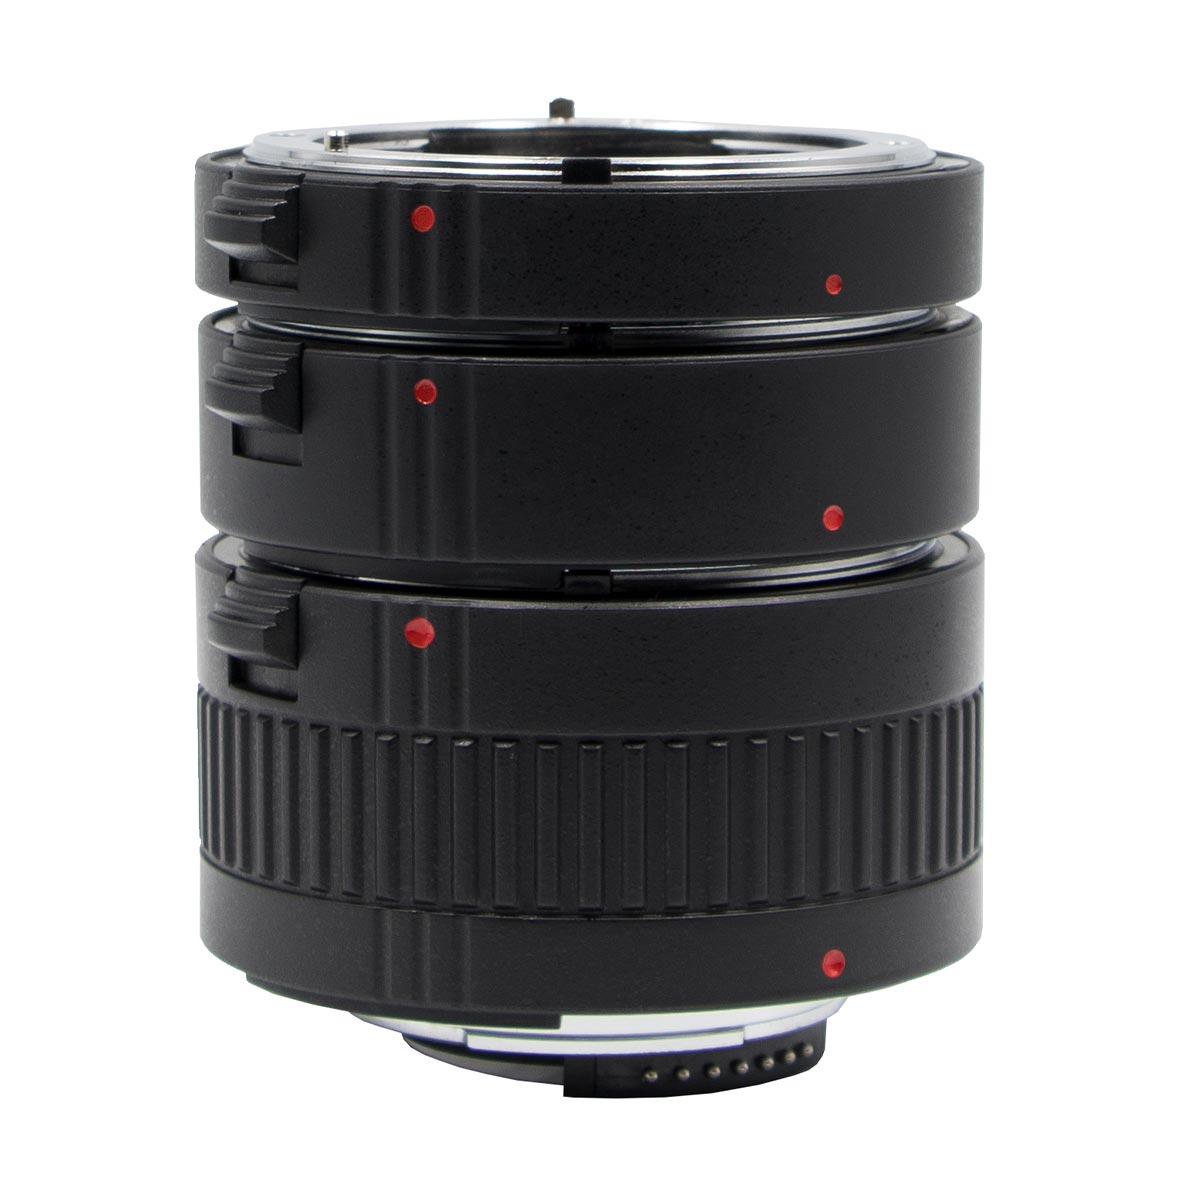 ProMaster Macro Extension Tube Set for Nikon F (N)